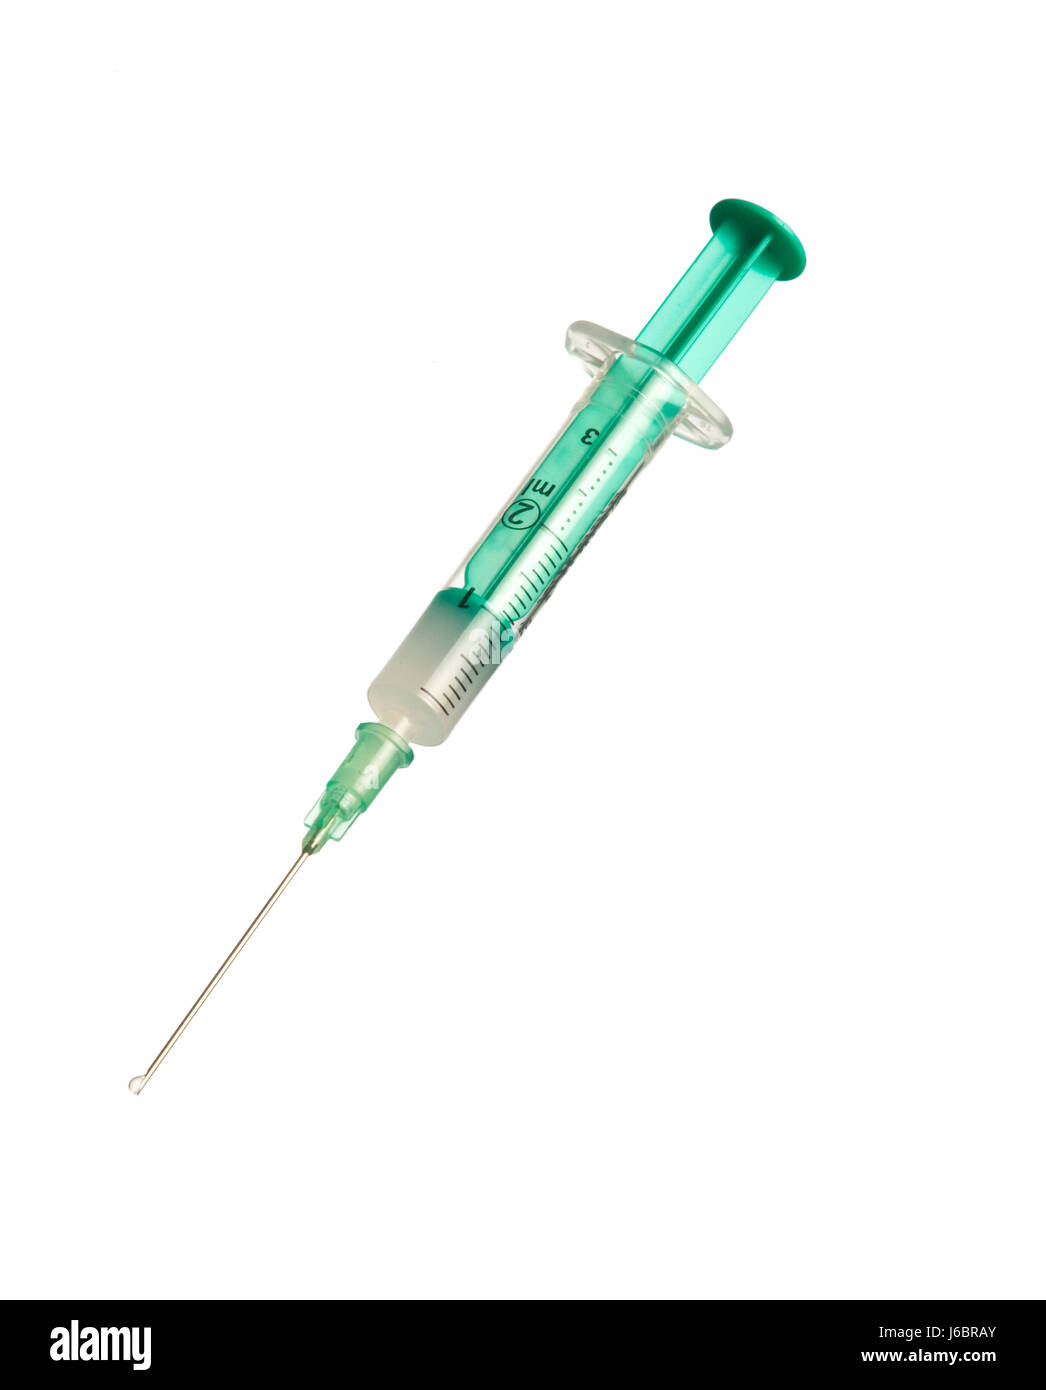 La inyección intravenosa material sintético jeringa aguja grave de pistón Fotografía de stock Alamy